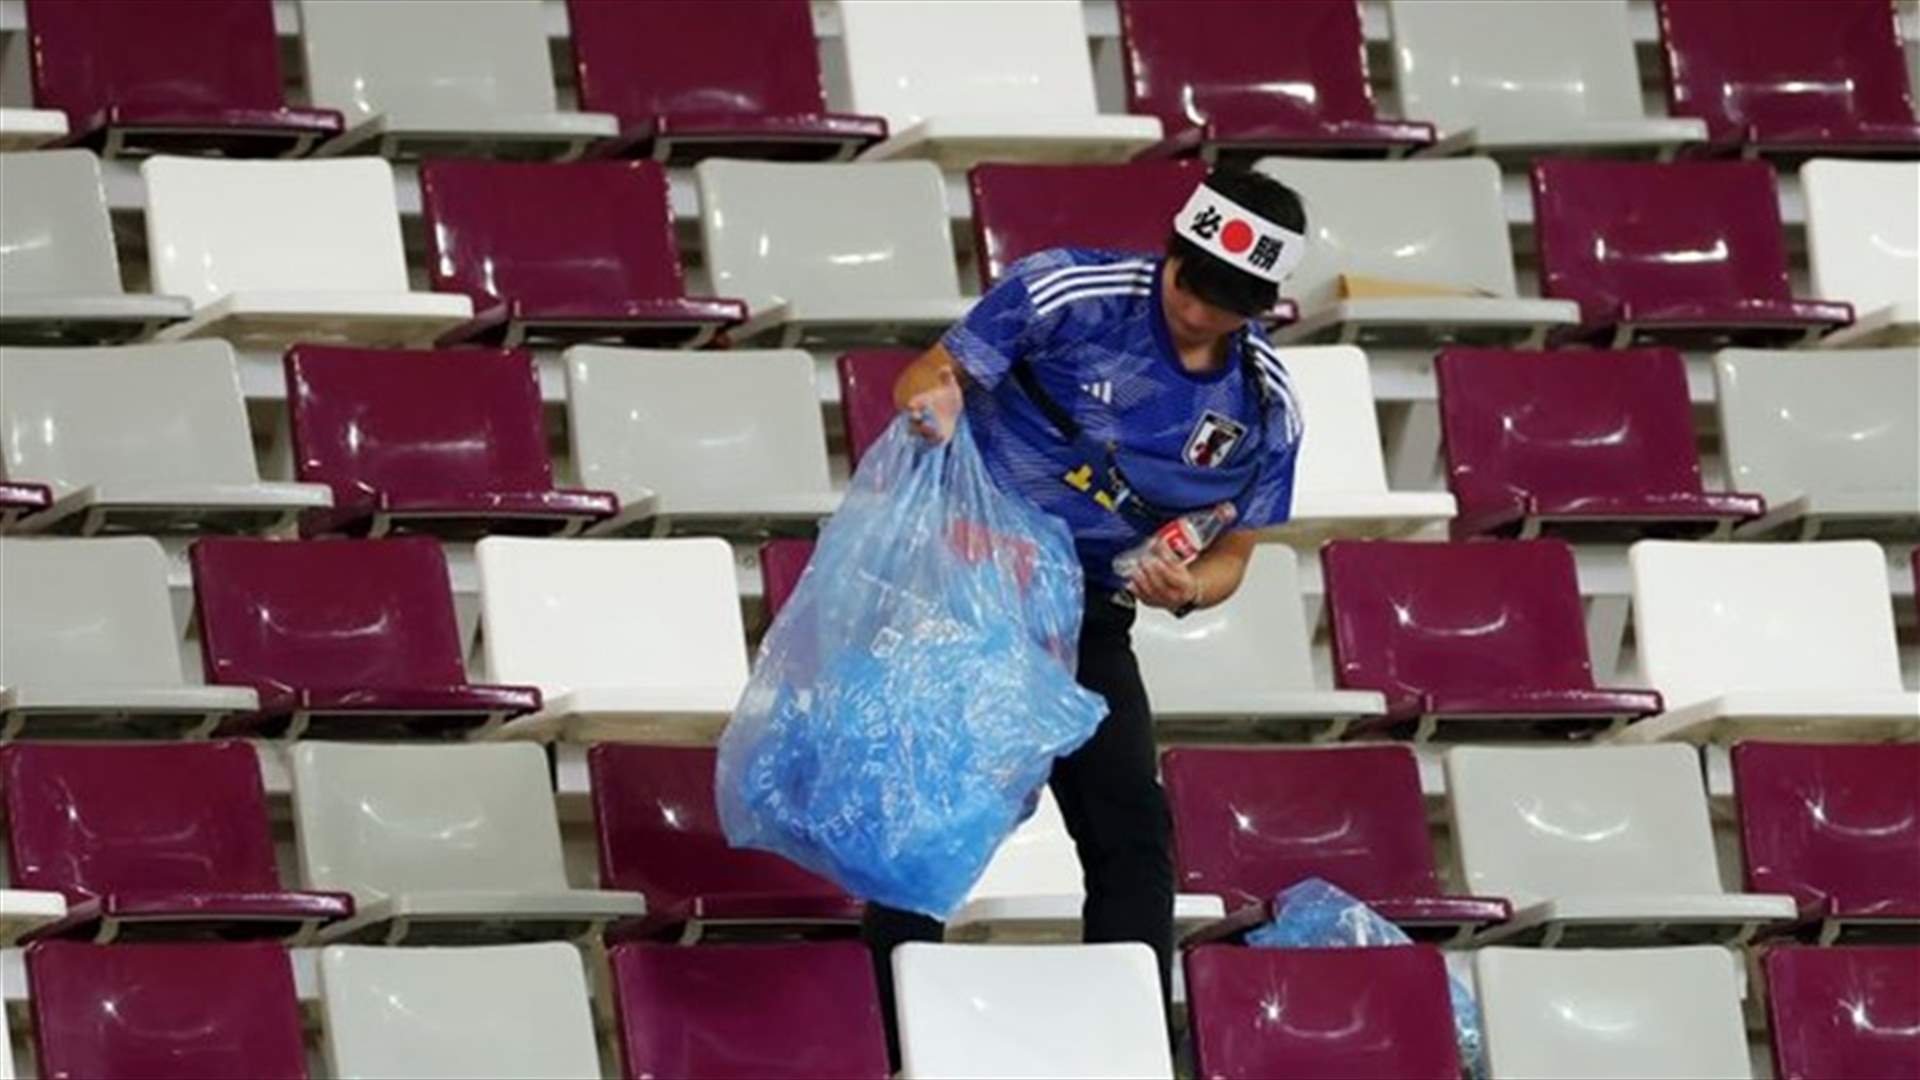 بعد الفوز التاريخي... مشجعو اليابان يساعدون في تنظيف الملعب (صور)